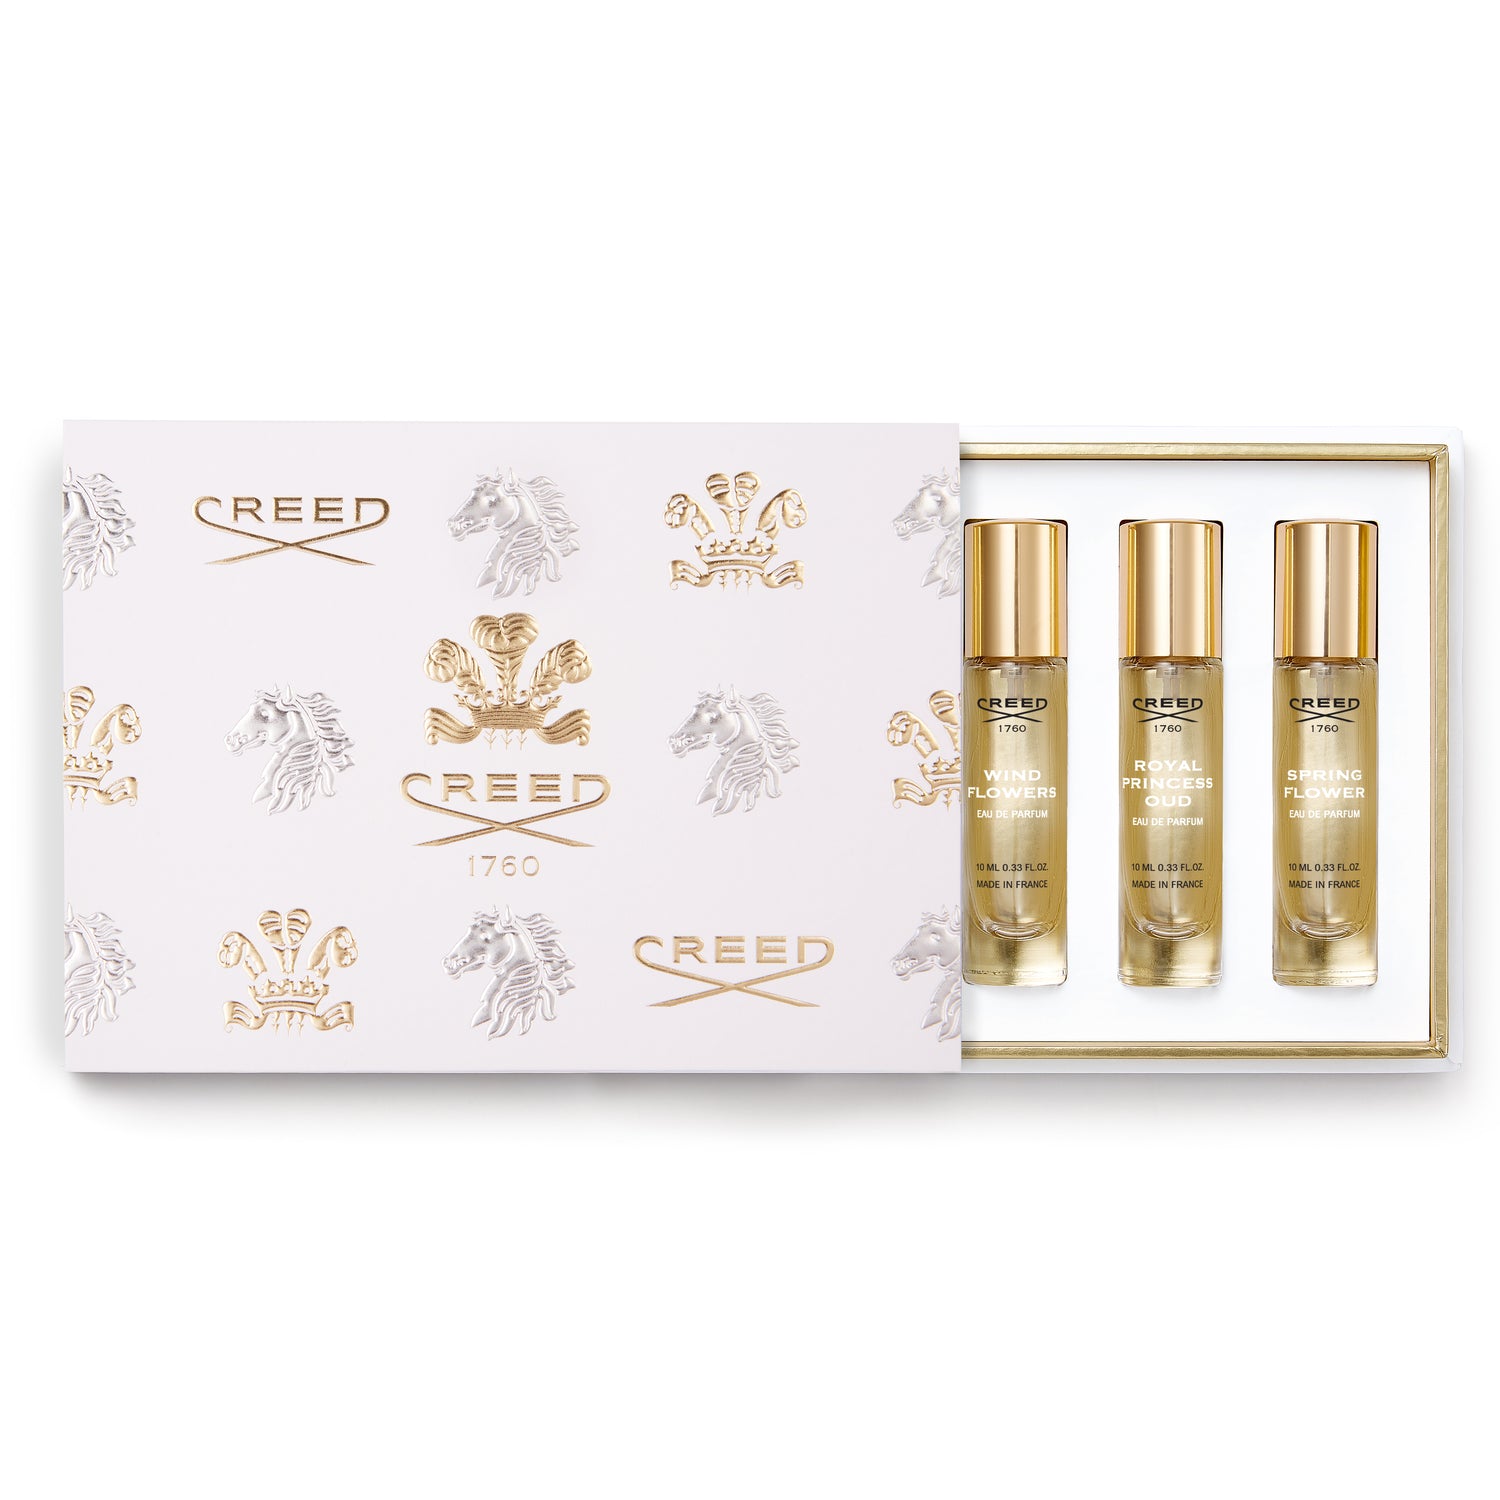 CREED For Him Eau de Parfum Fragrance Gift Set 3 x 10ml